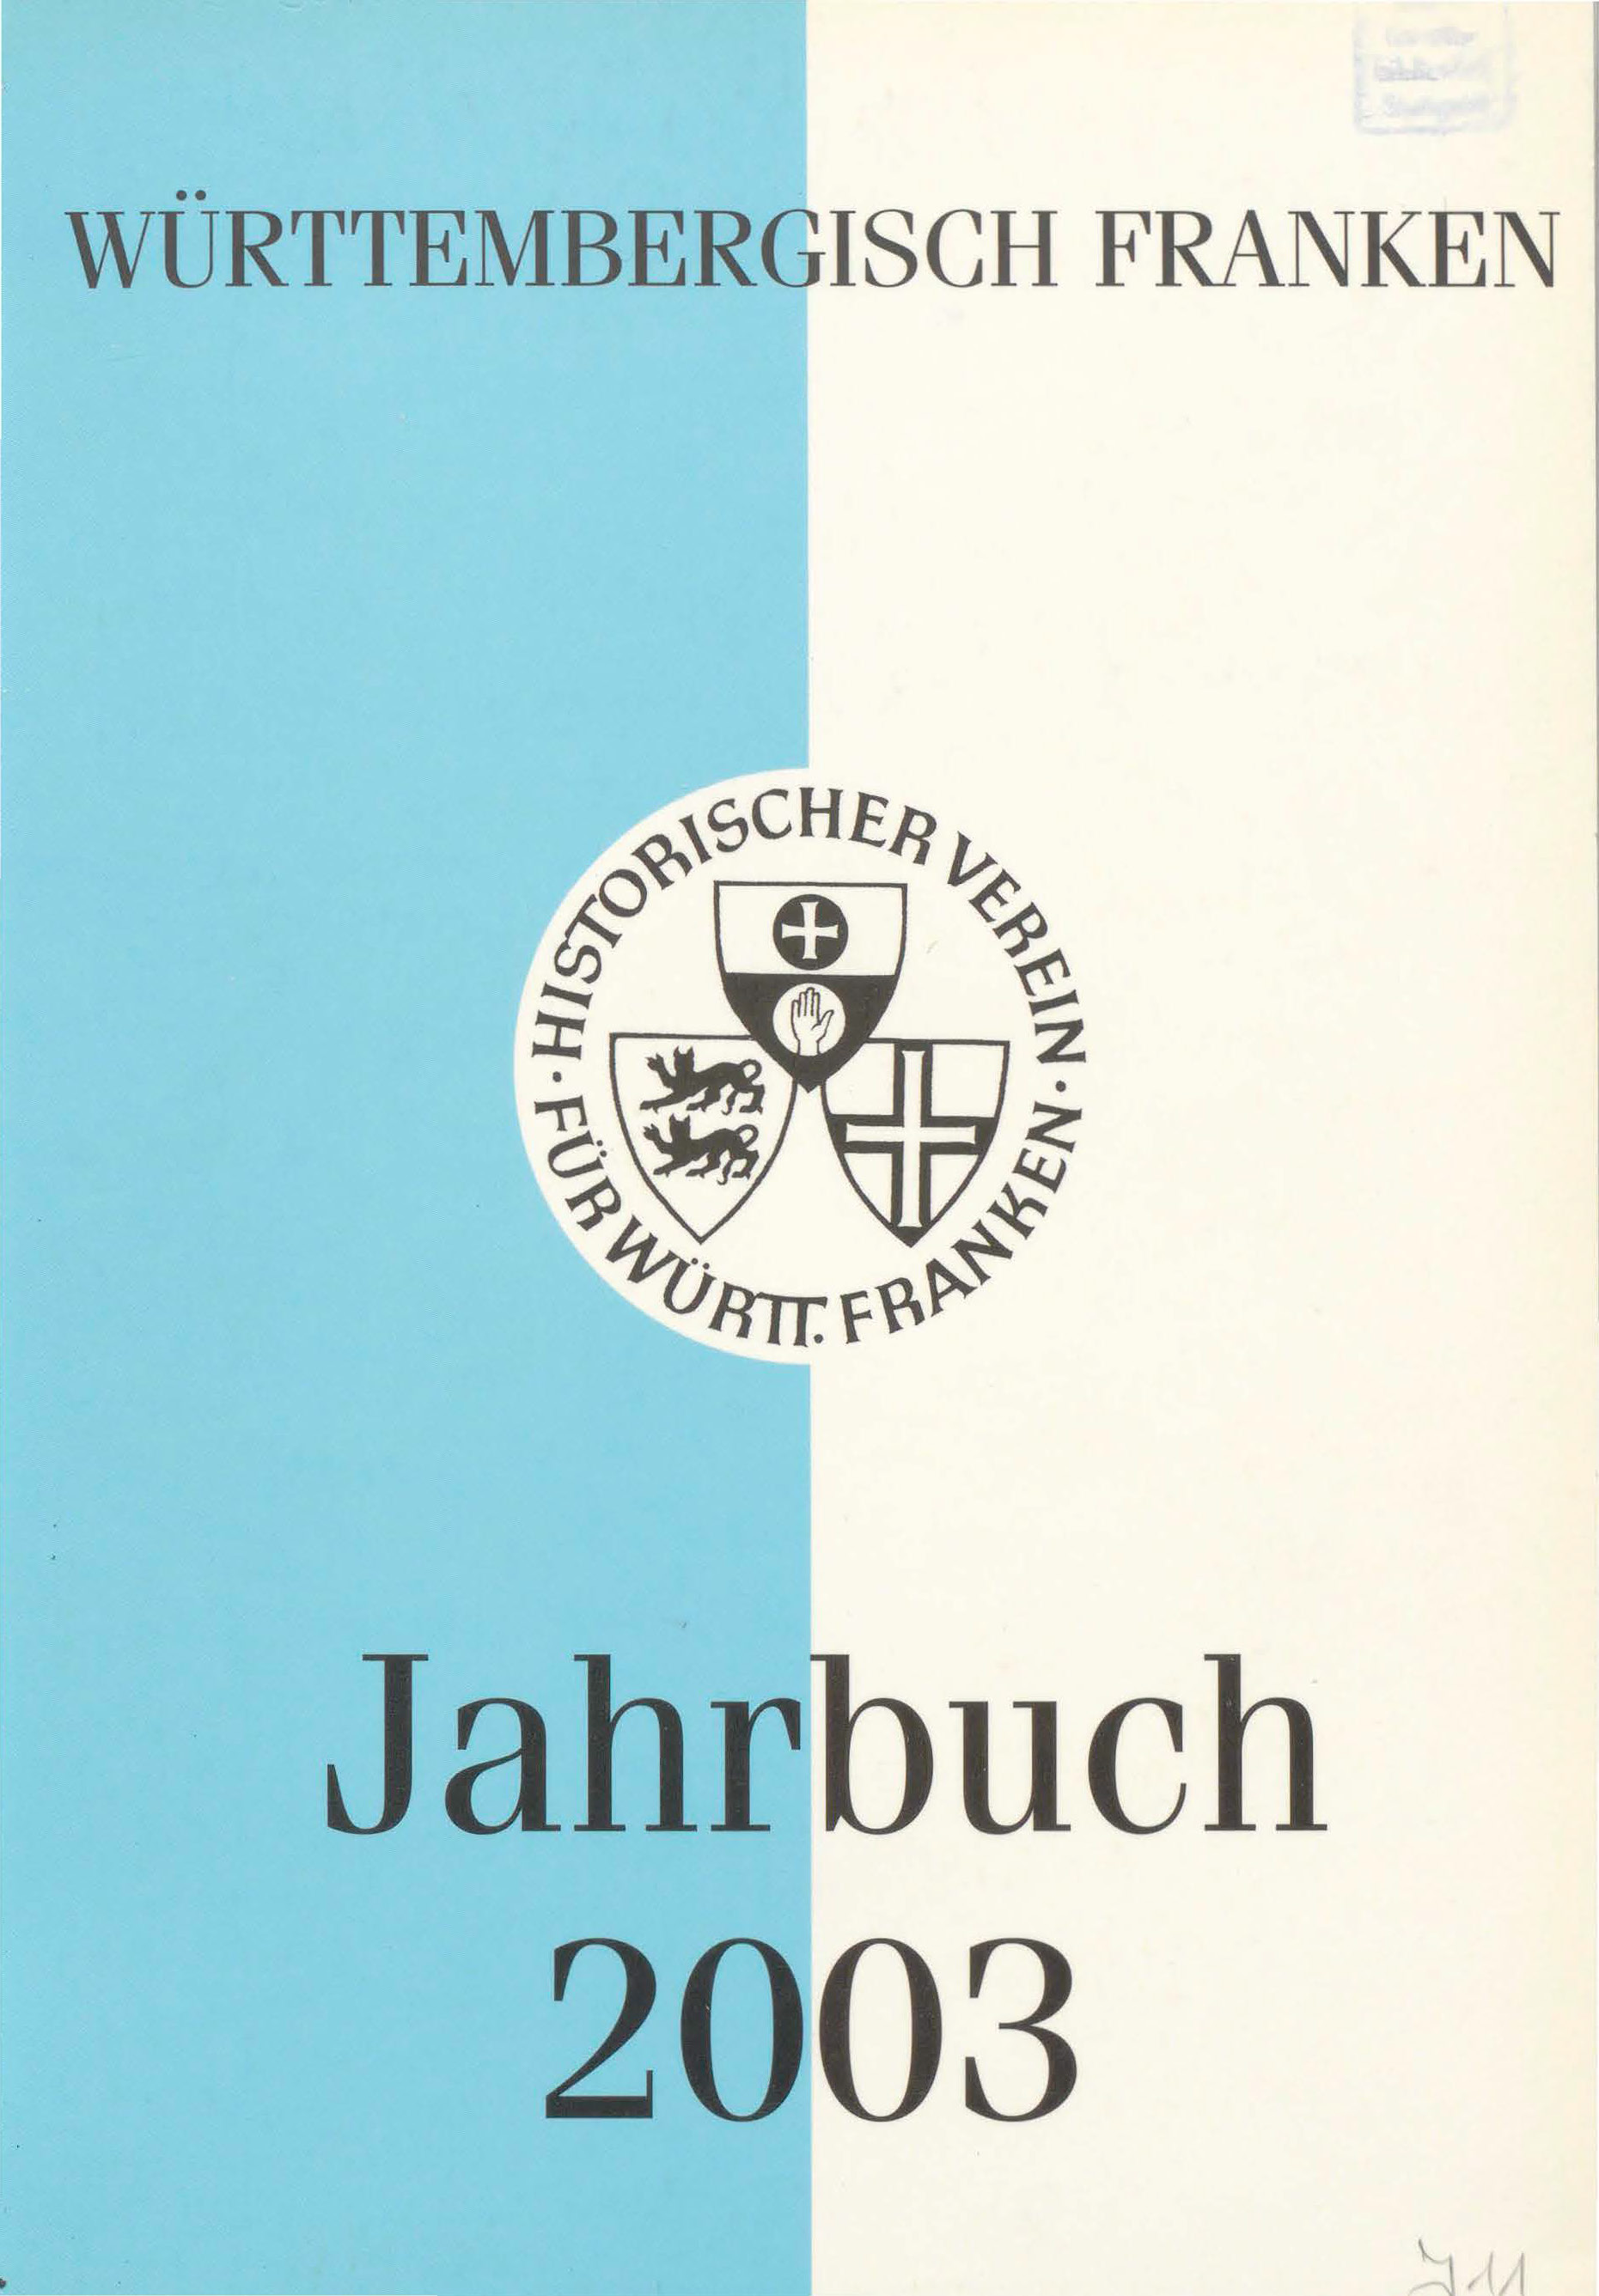                     Ansehen Bd. 87 (2003): Württembergisch Franken
                